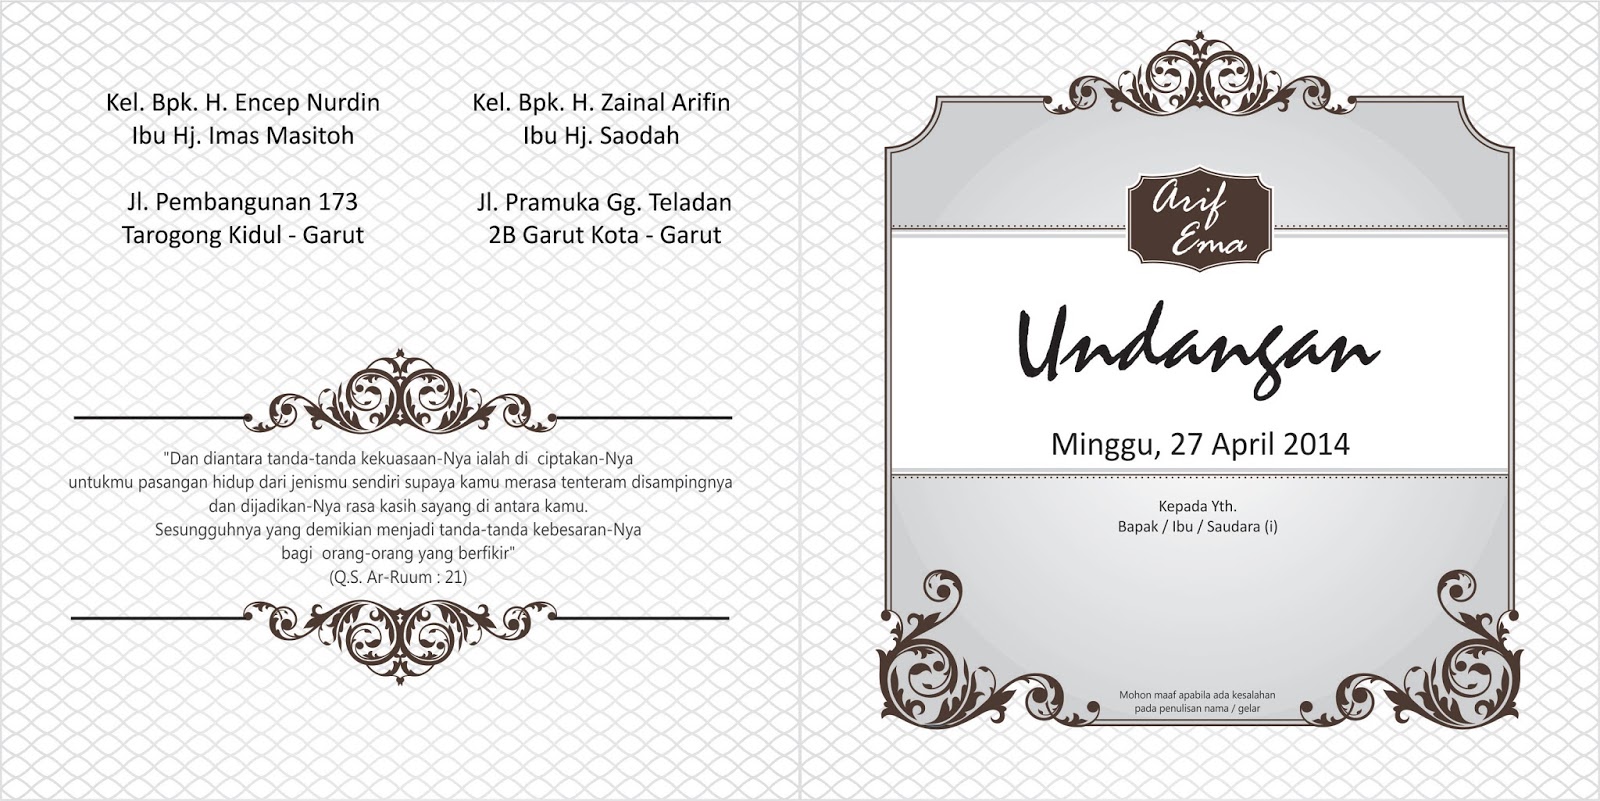 download template undangan pernikahan word